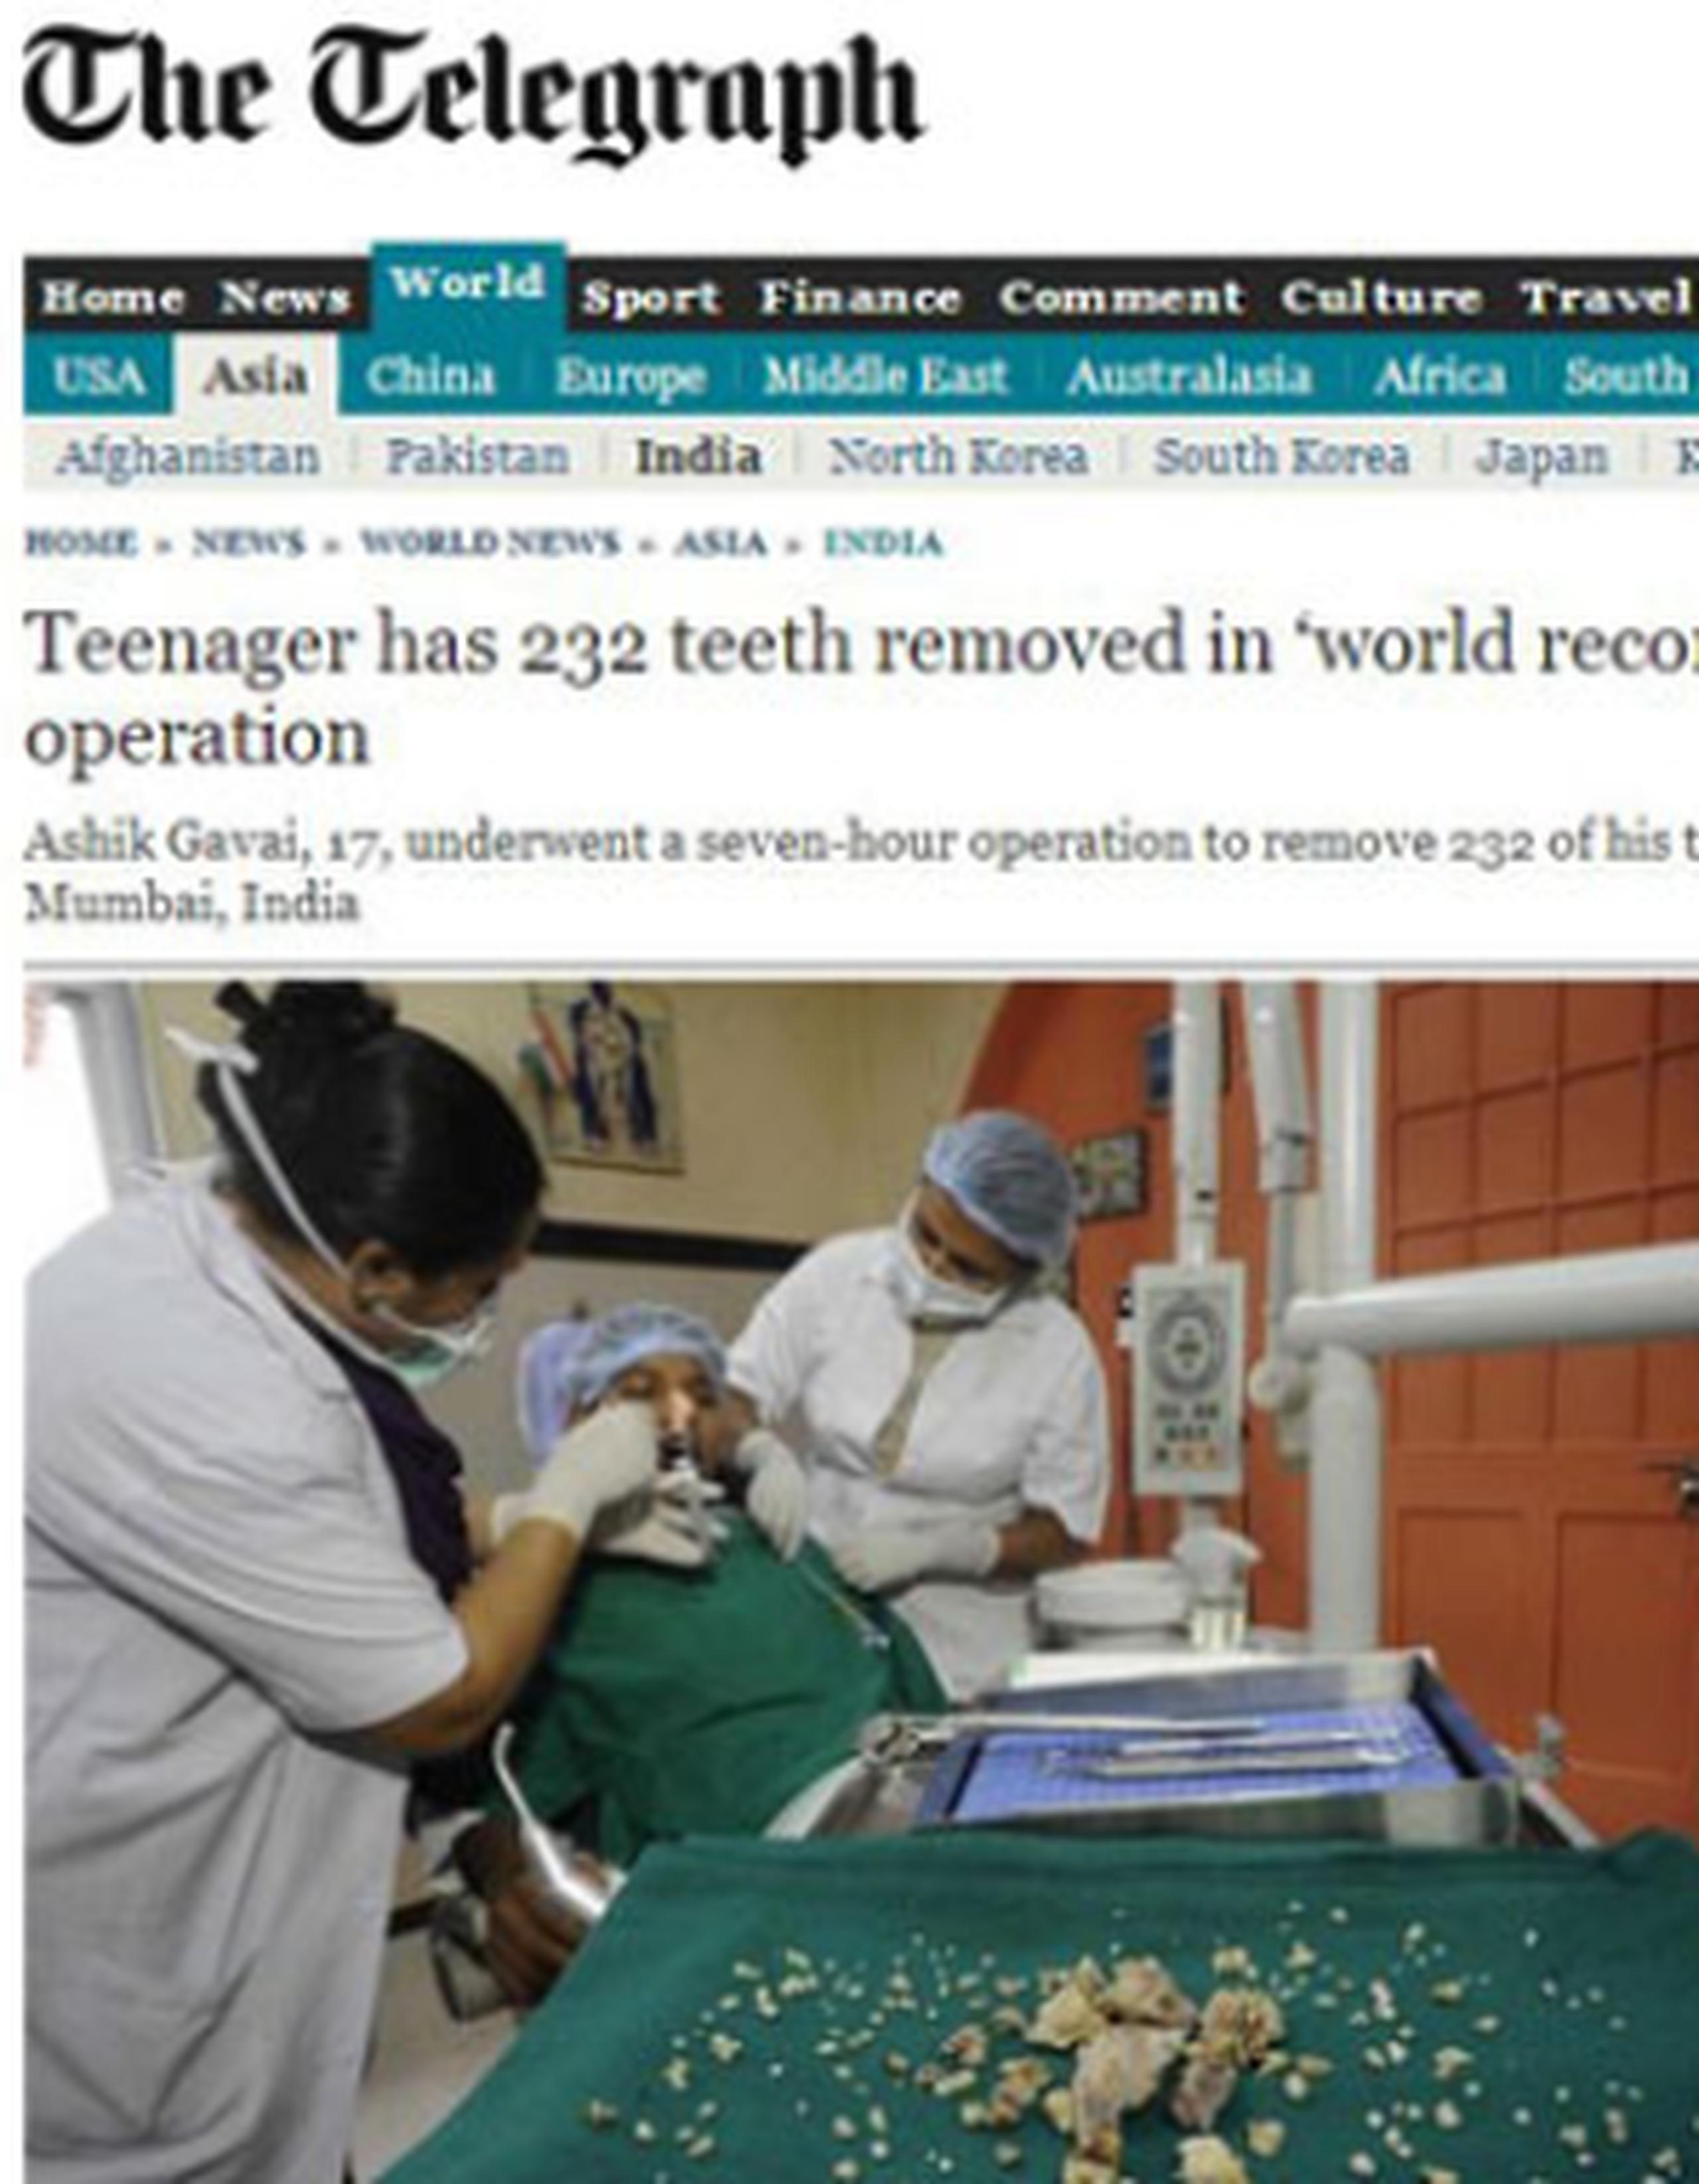 El paciente fue operado el pasado lunes por dentistas y otorrinolaringólogos. (www.telegraph.co.uk)